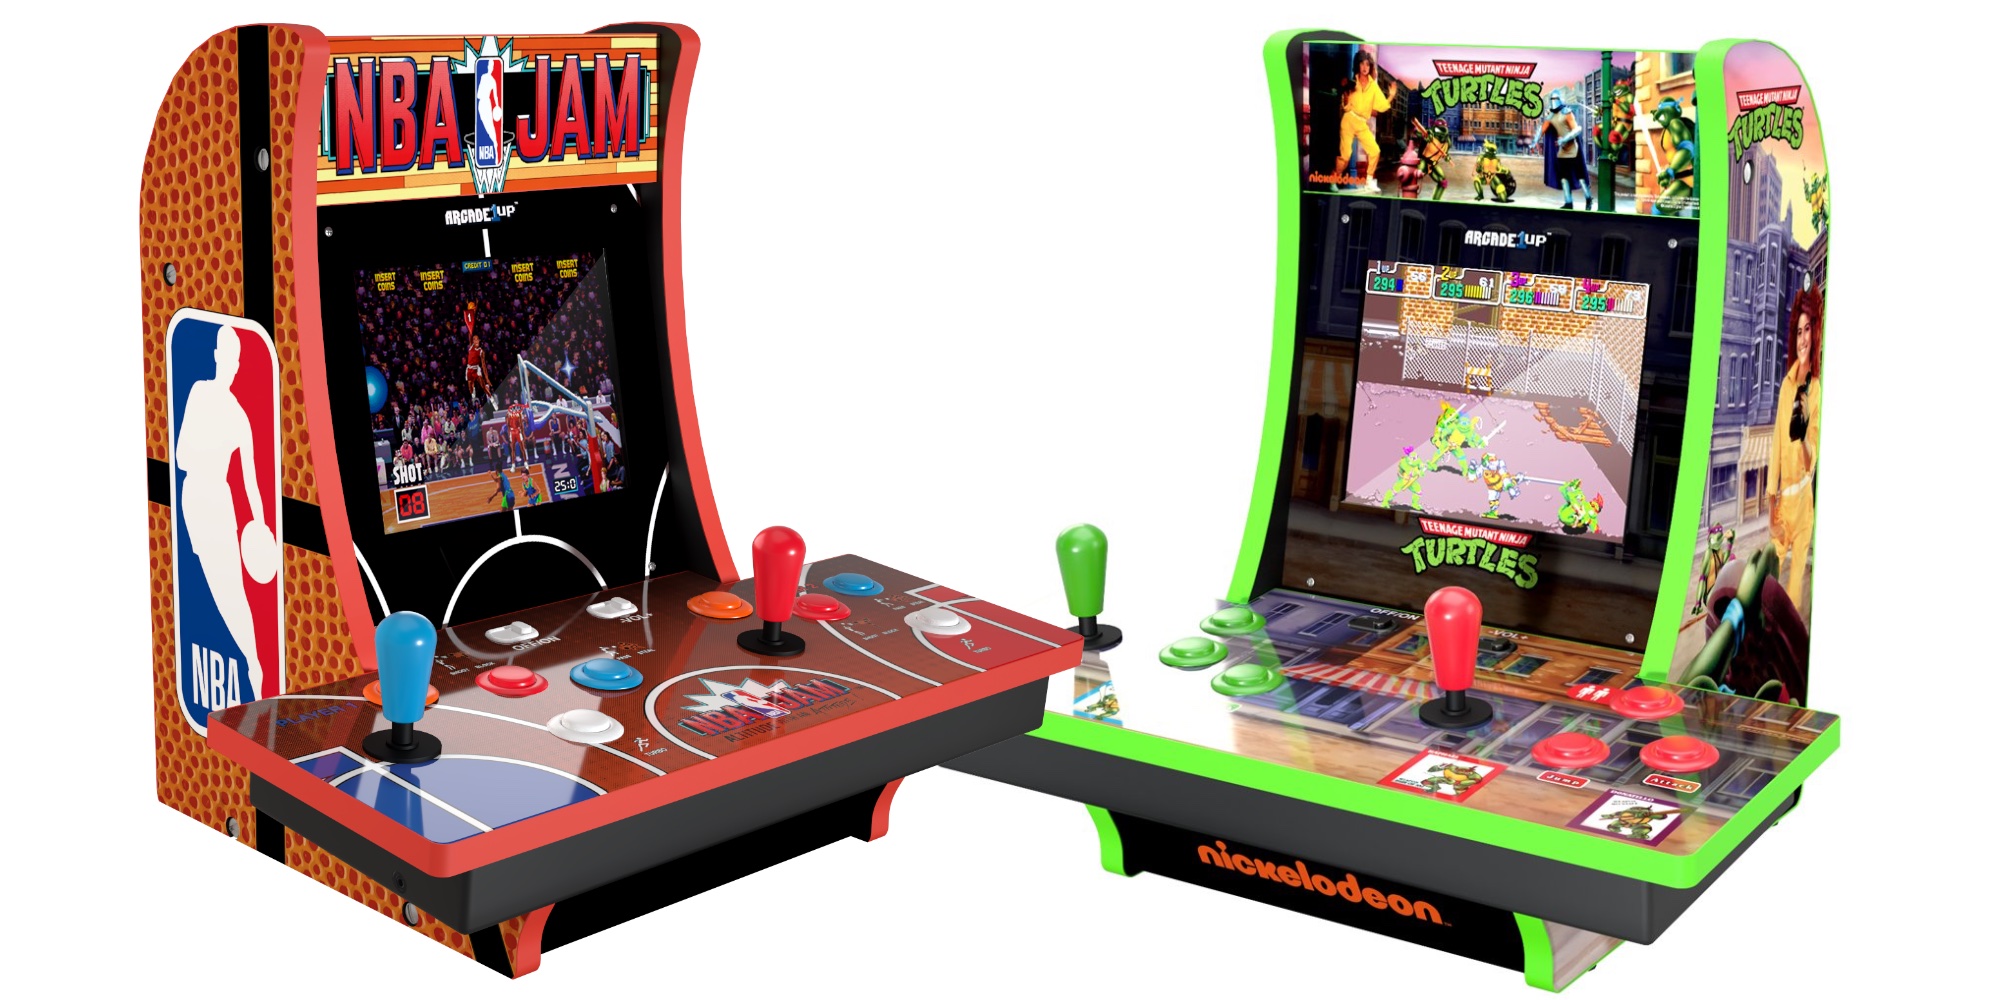 Arcade1UP Retro Arcade Machine with NBA JAM review